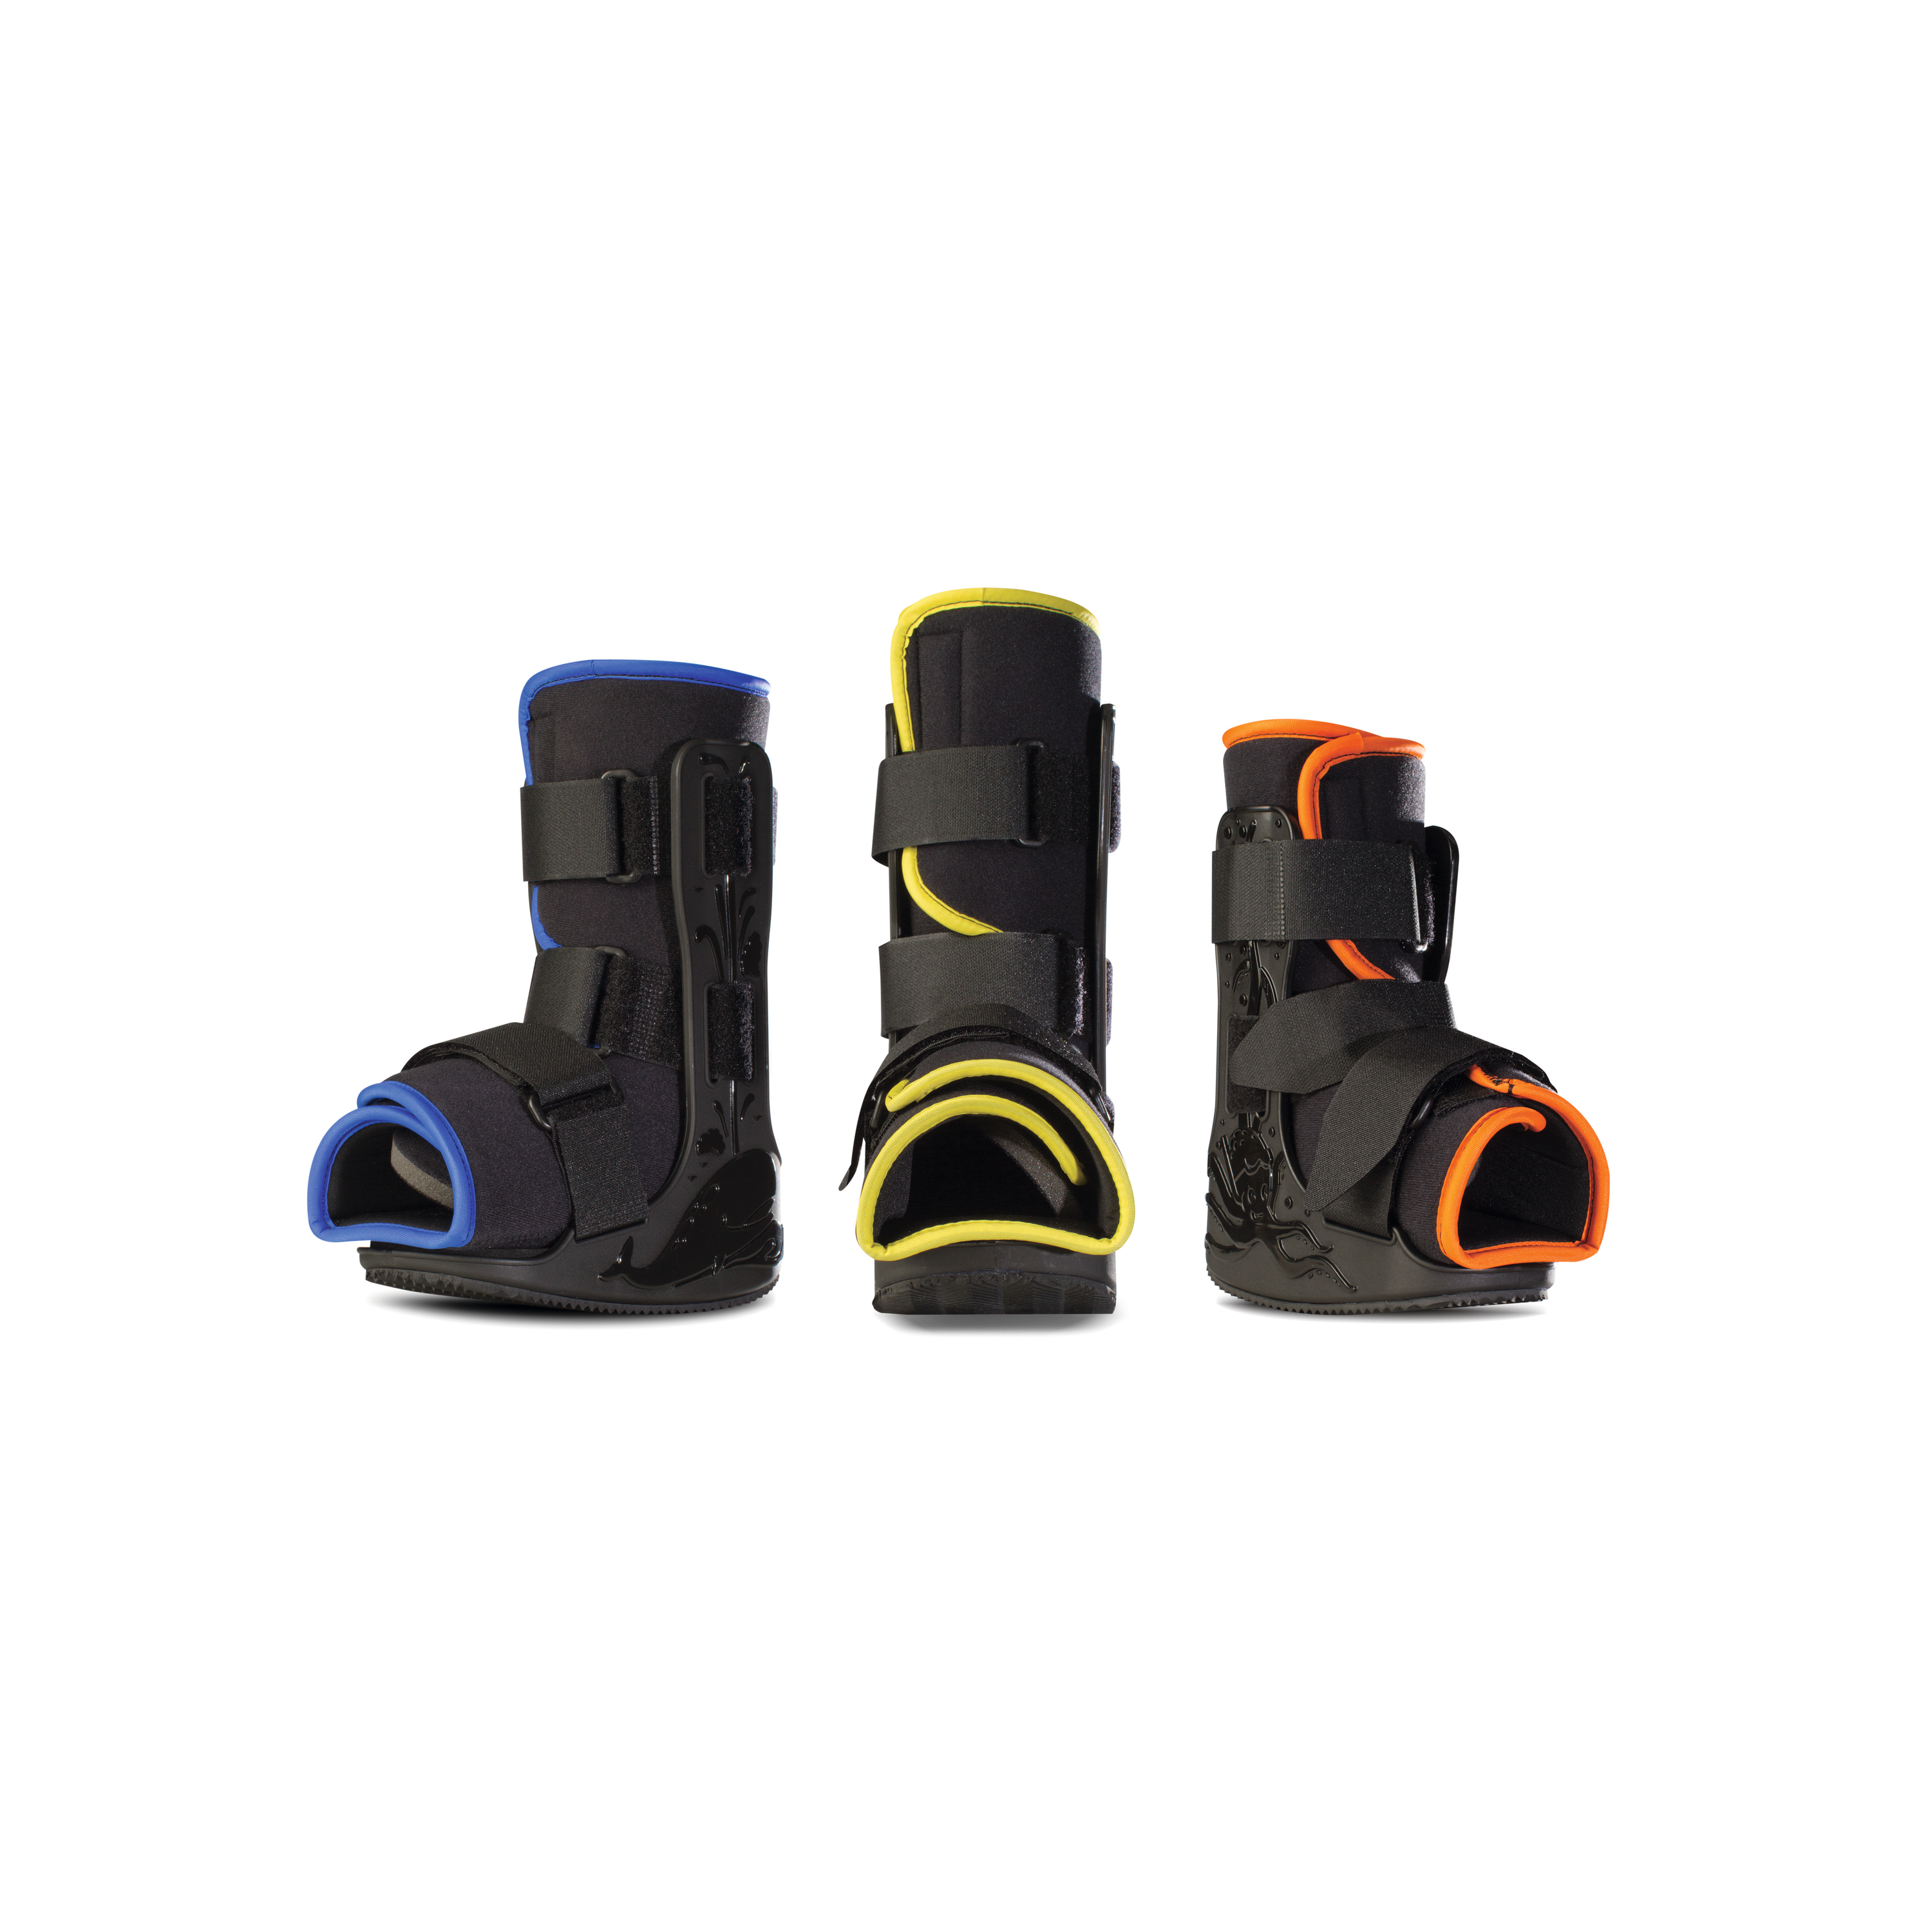 Produktbild PROCARE® MiniTrax™ Walker Produktfamilie, Unterschenkel-Fuß-Orthese zur Immobilisierung für die Versorgung von Kindern, blau, gelb, orange